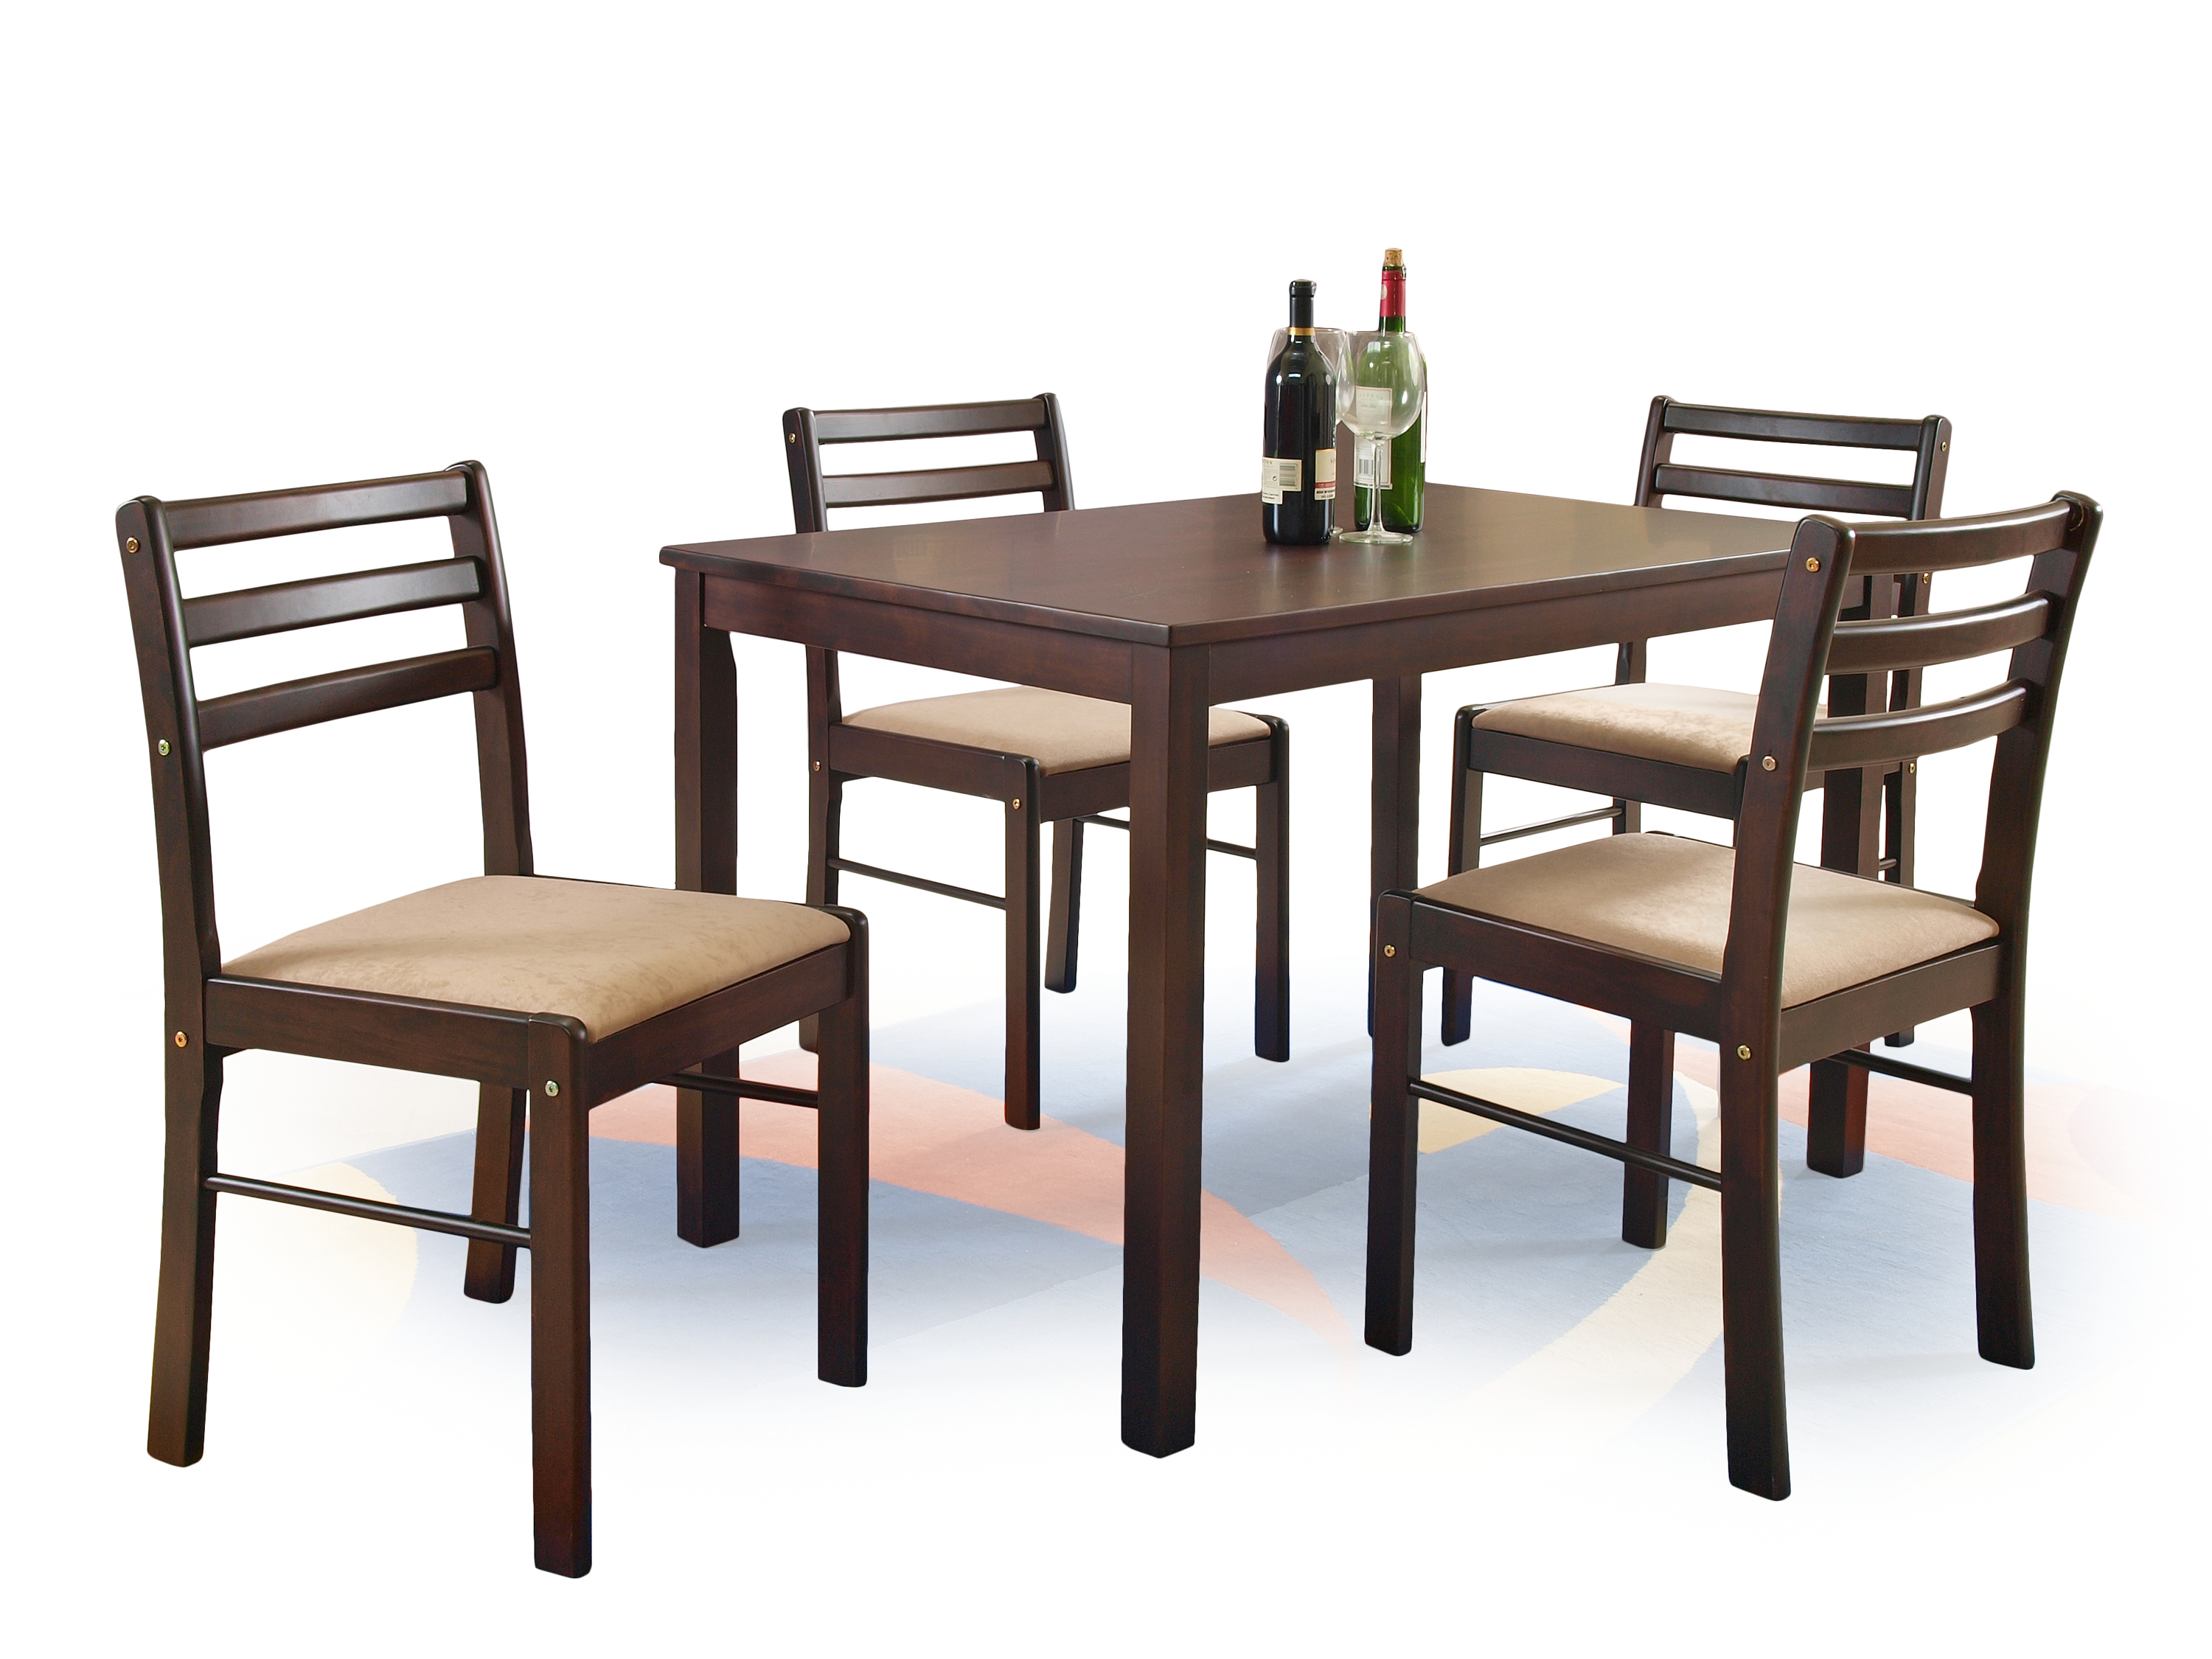 Стол кухонный набор. Обеденный набор Halmar Faust (стол + 4 стула). Комплект столовой мебели Halmar Cordoba (стол + 4 стула, дуб). Комплект обеденный Халмар. Мебель stol stul.